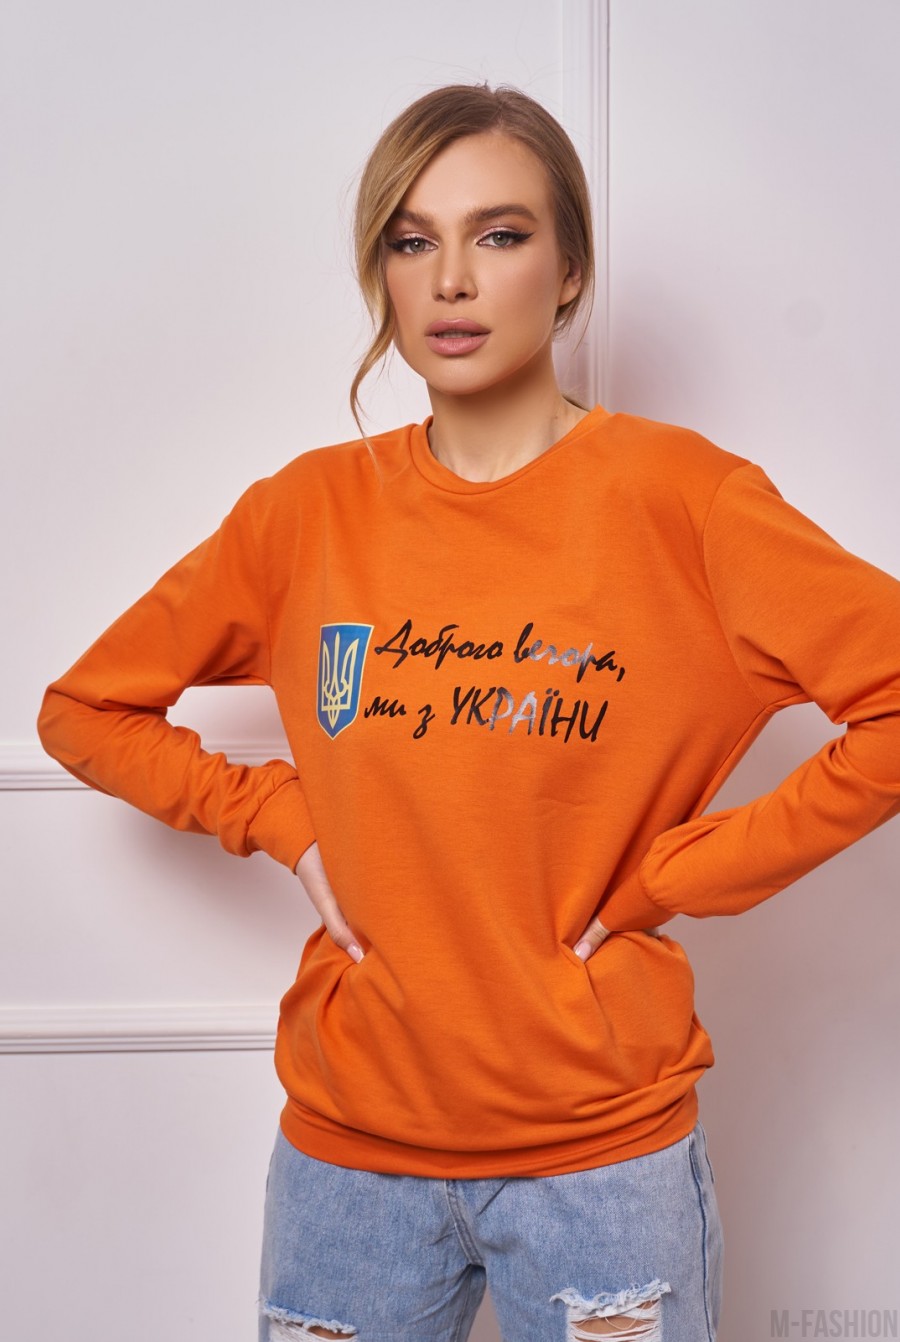 Оранжевый трикотажный свитшот с принтом и надписями - Фото 1